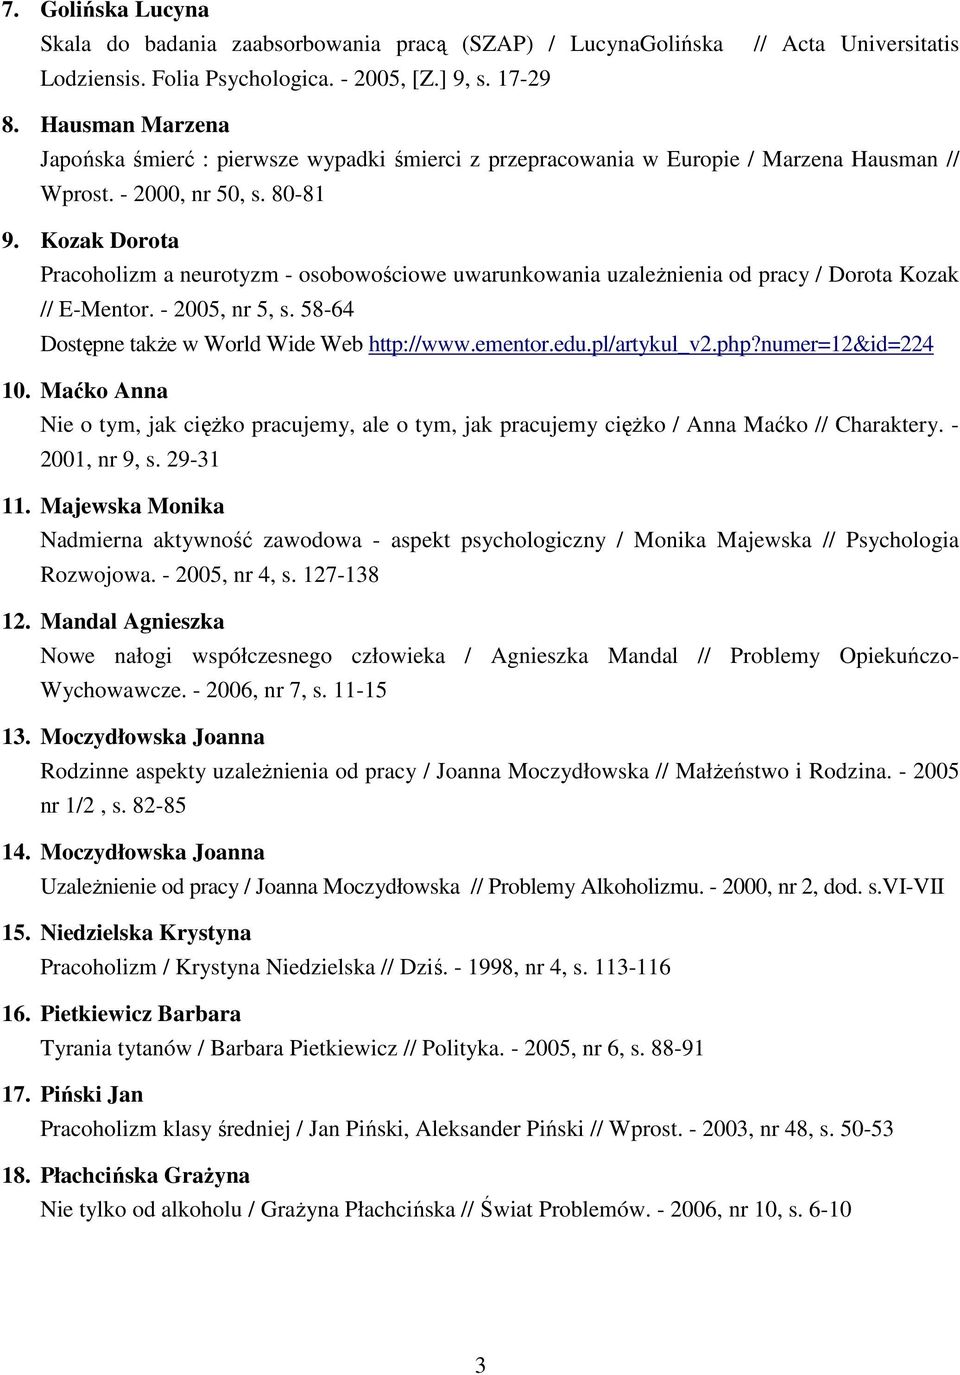 Kozak Dorota Pracoholizm a neurotyzm - osobowościowe uwarunkowania uzaleŝnienia od pracy / Dorota Kozak // E-Mentor. - 2005, nr 5, s. 58-64 Dostępne takŝe w World Wide Web http://www.ementor.edu.